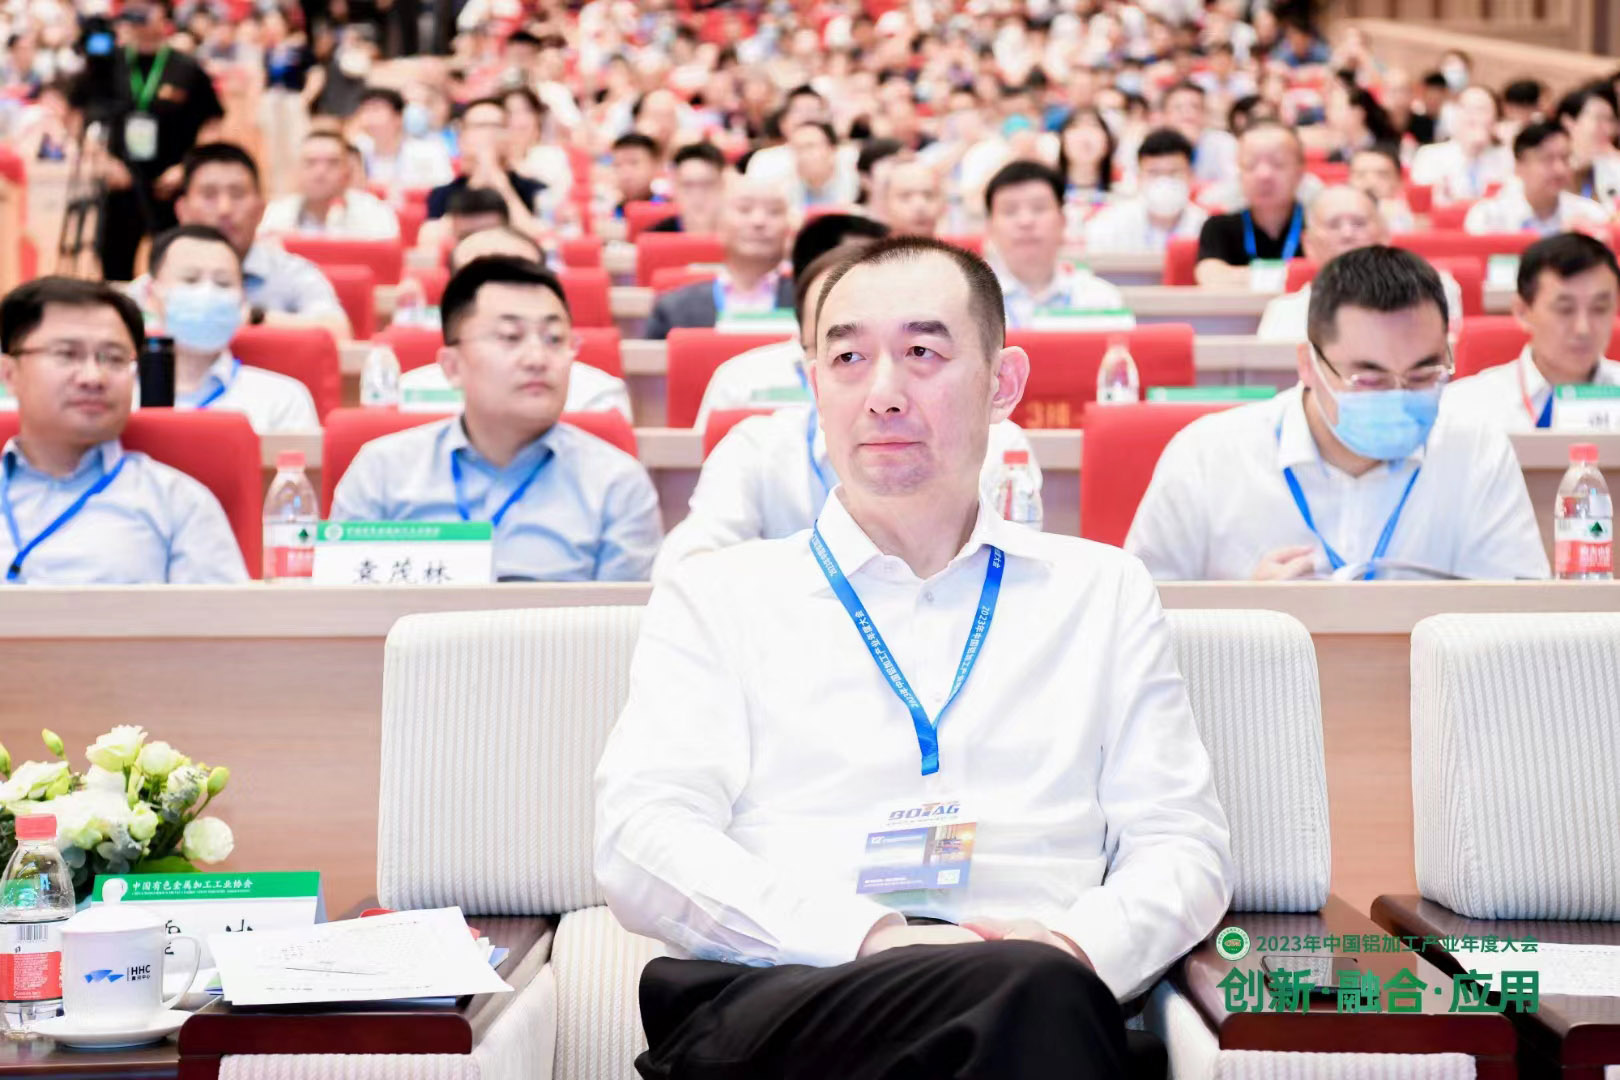 公司董事长霍斌出席235275503年中国铝加工产业年度大会